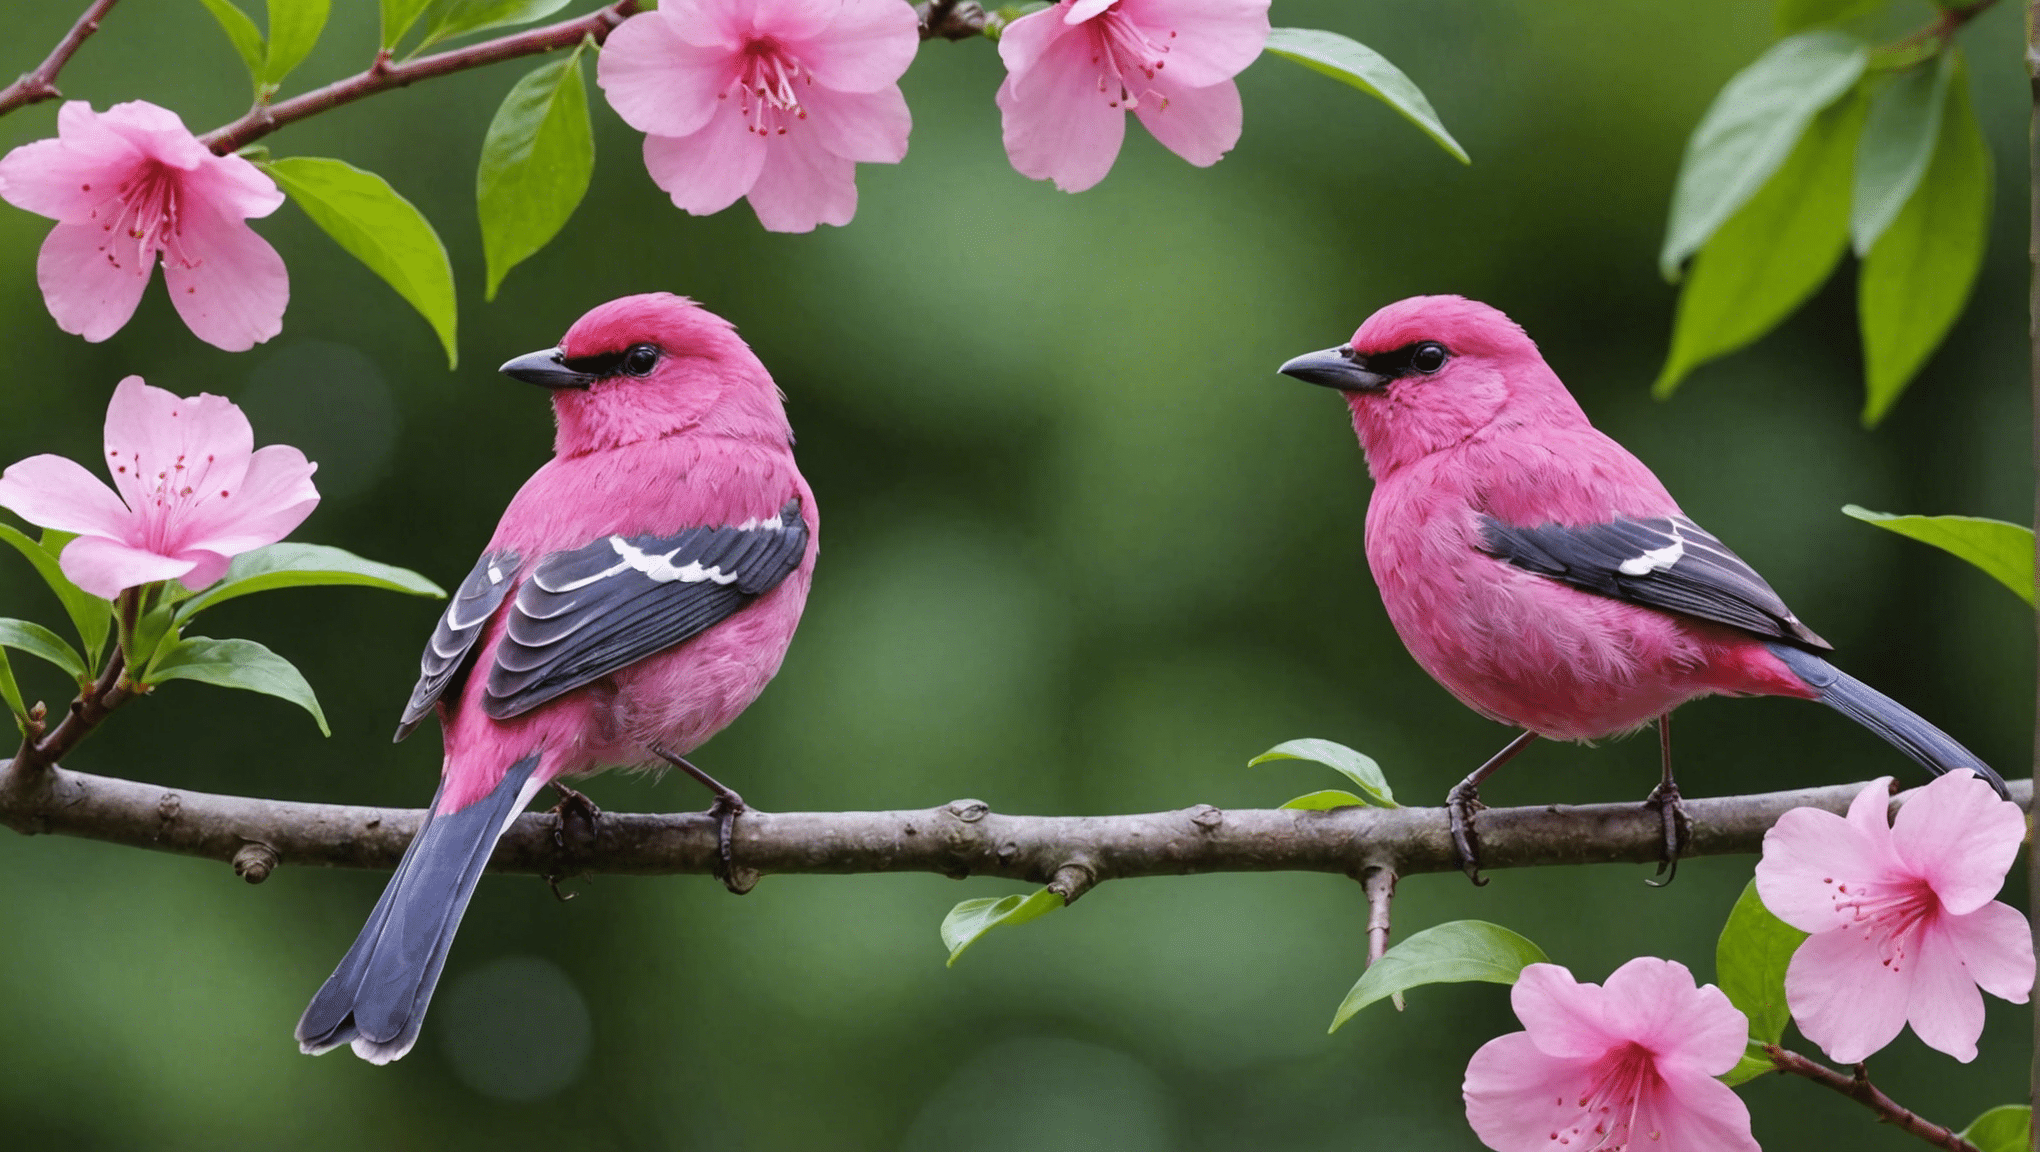 גלה אם ציפורים ורודות הן אמיתיות עם הדיון המסקרן הזה על קיומן של ציפורים ורודות, המאפיינים שלהן ומשמעותן בעולם הטבע.